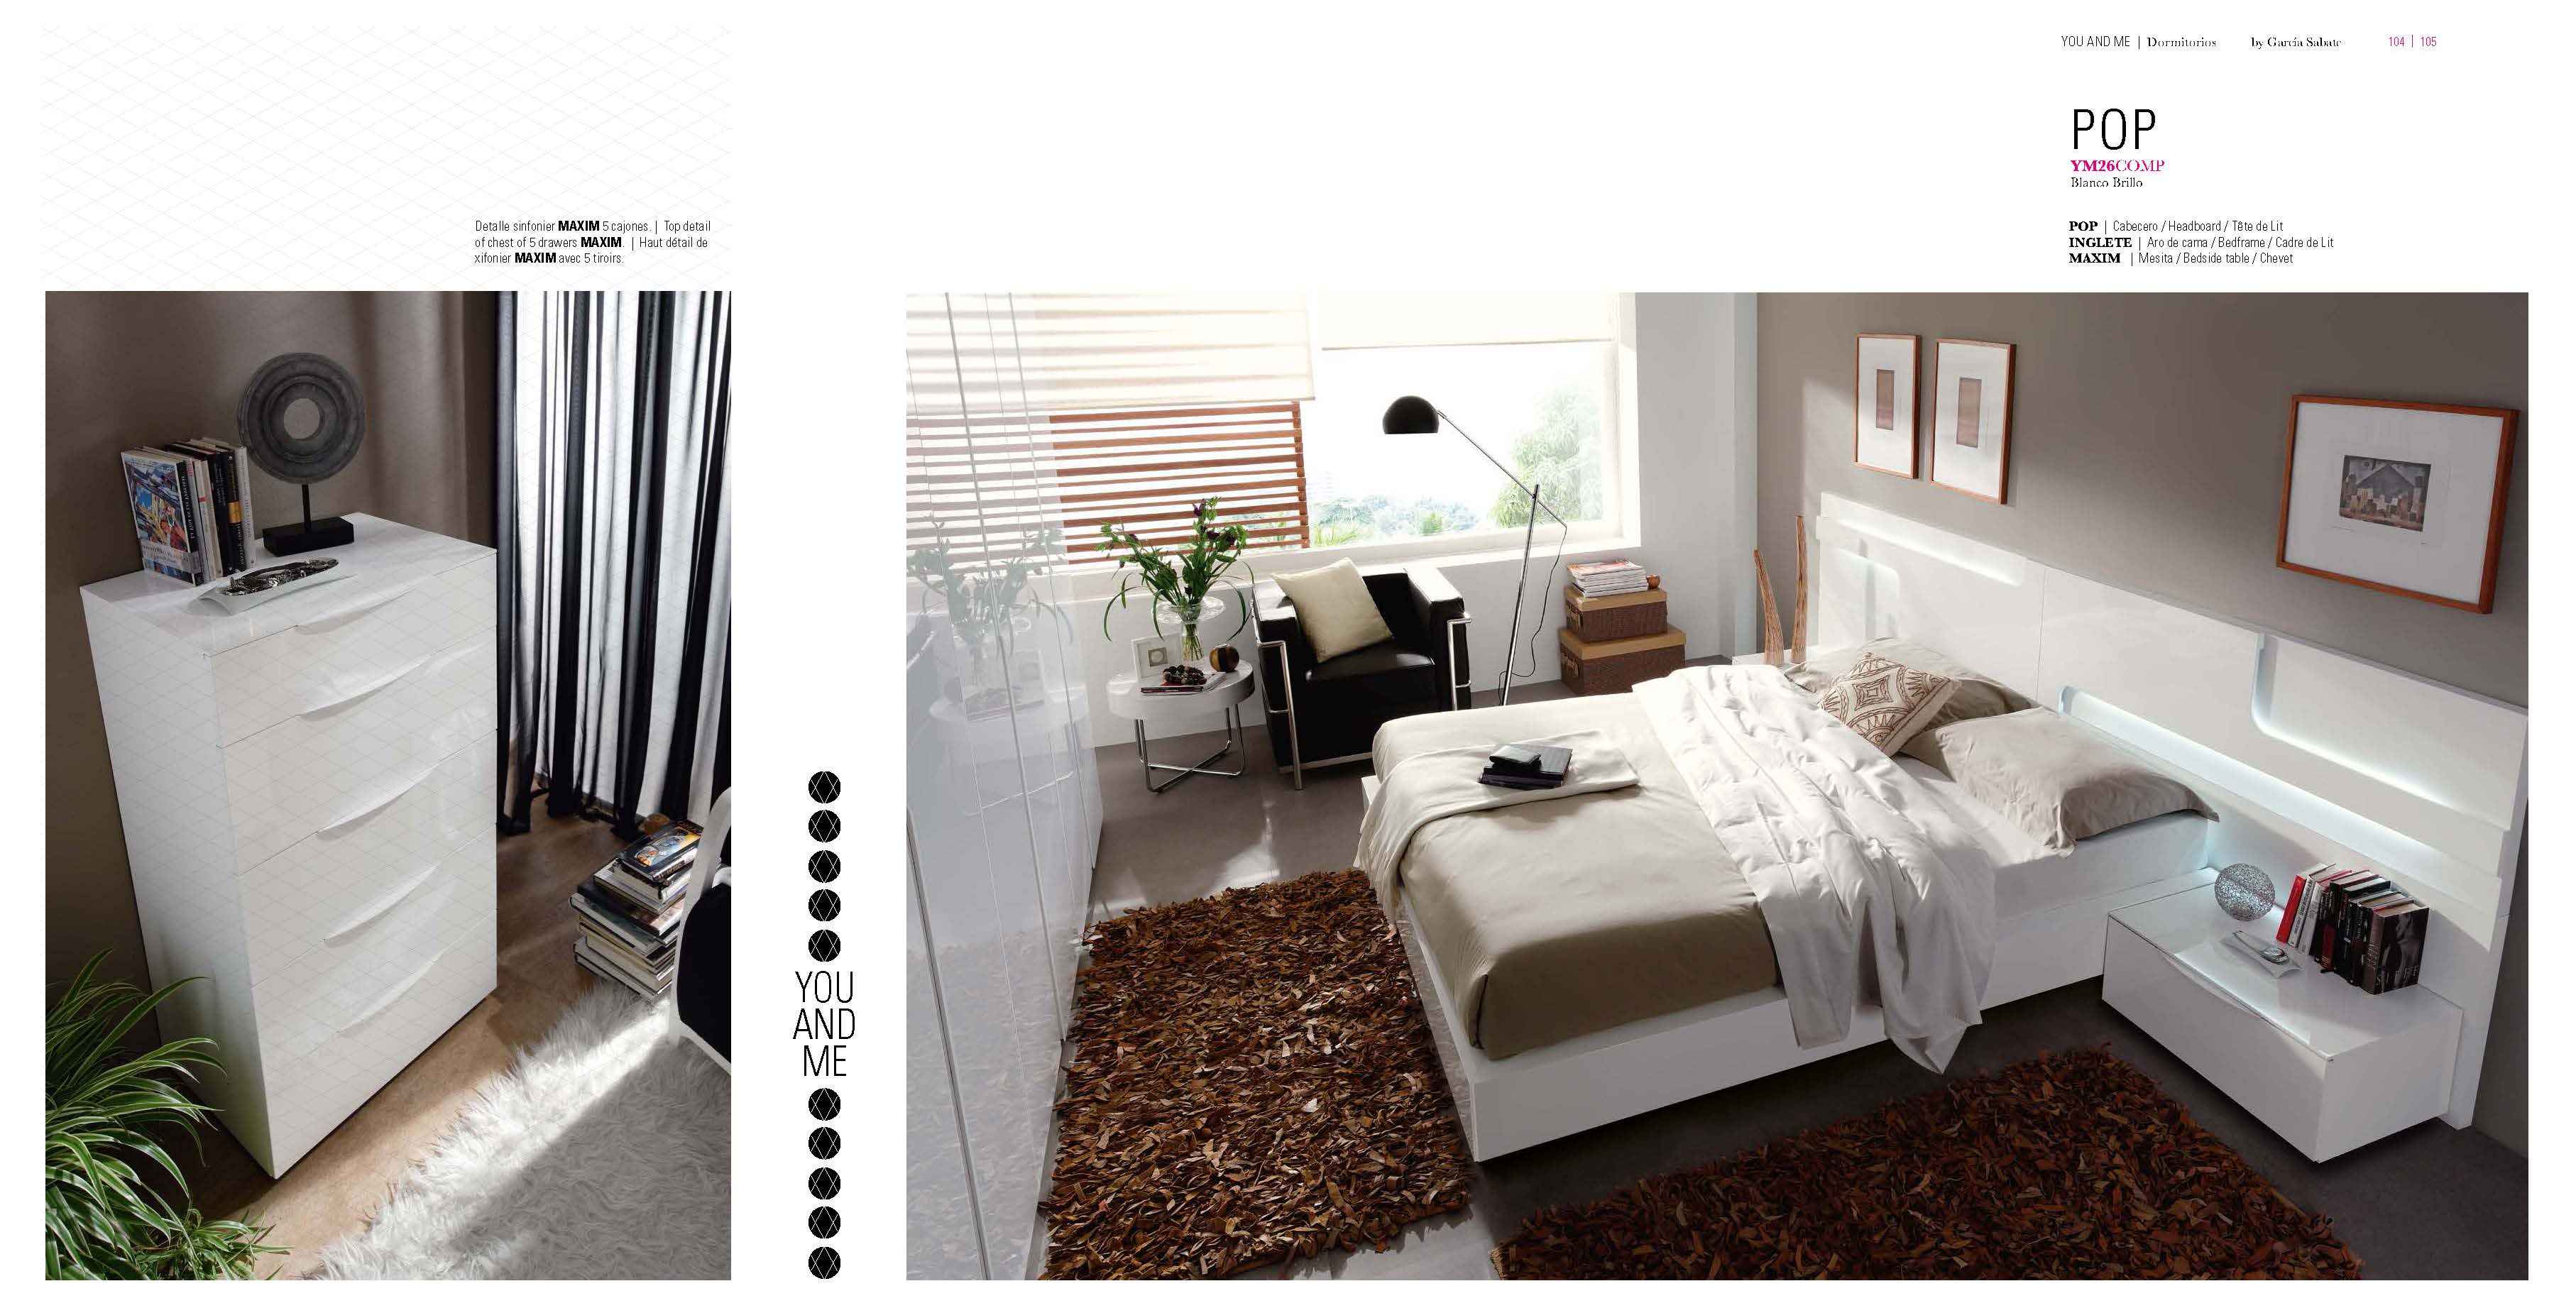 Bedroom Furniture Nightstands YM26